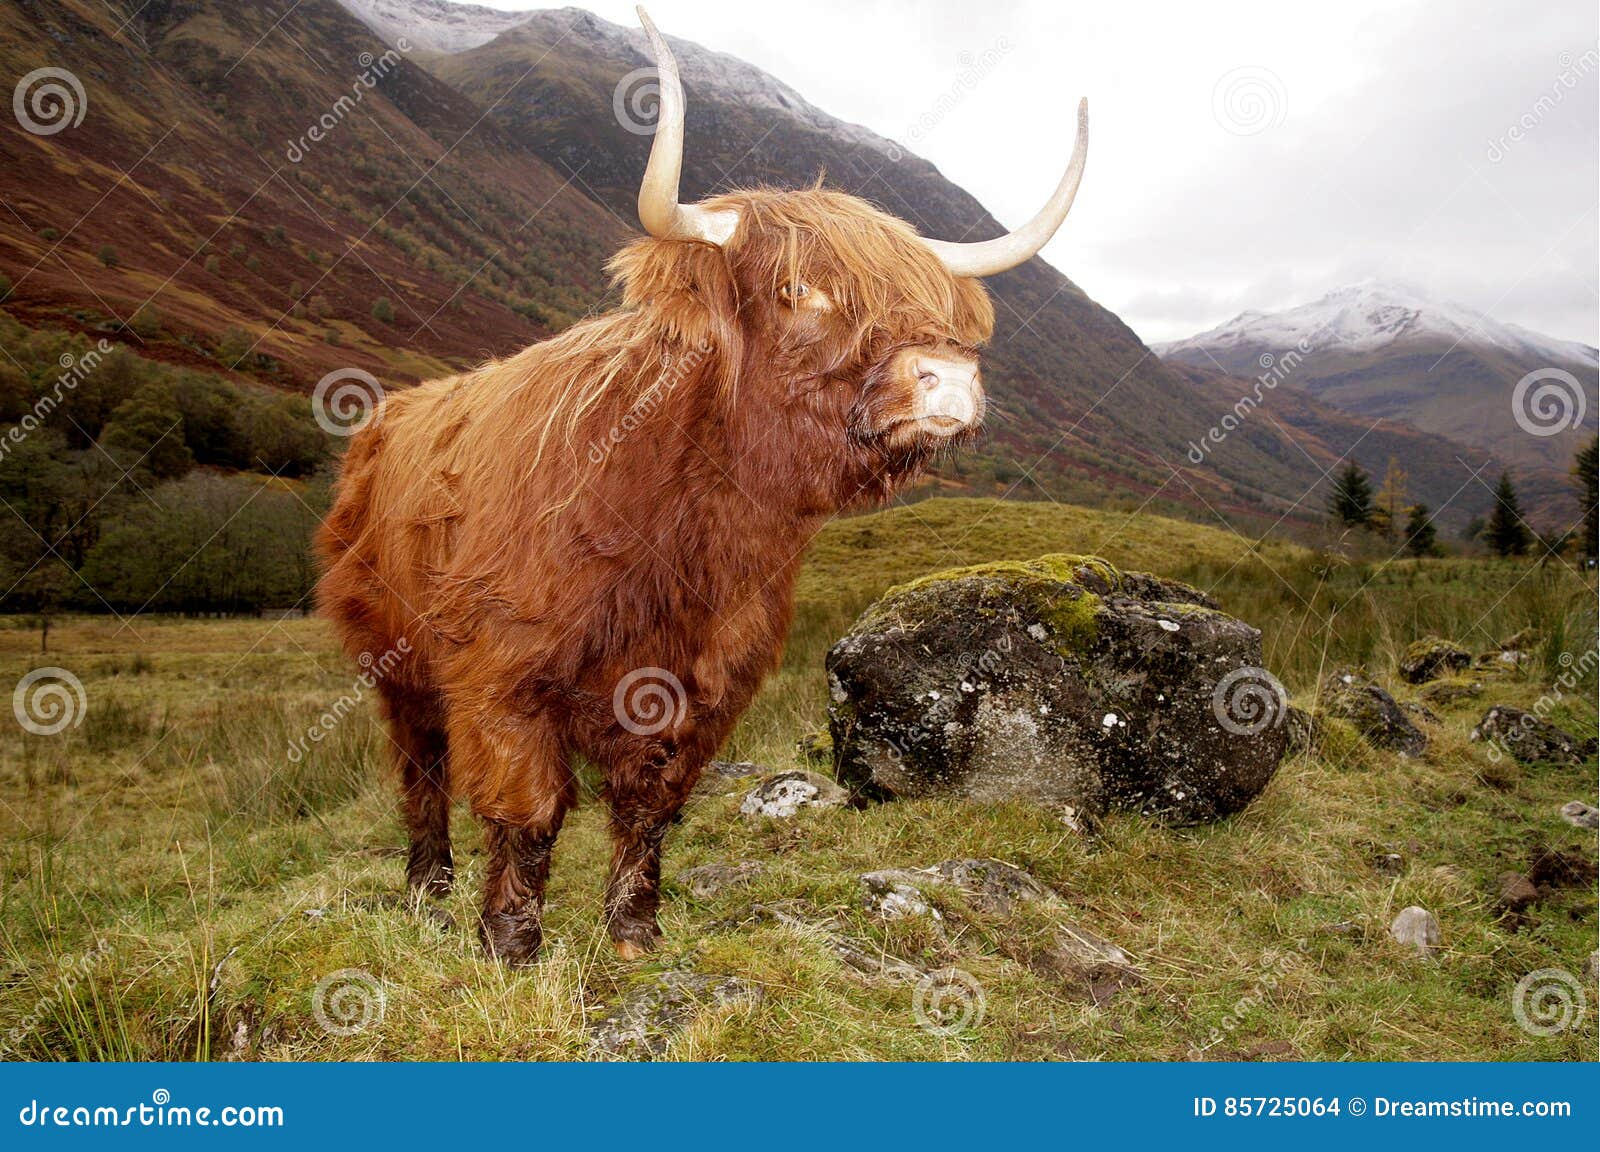 highland cow in a glen coe, scotland